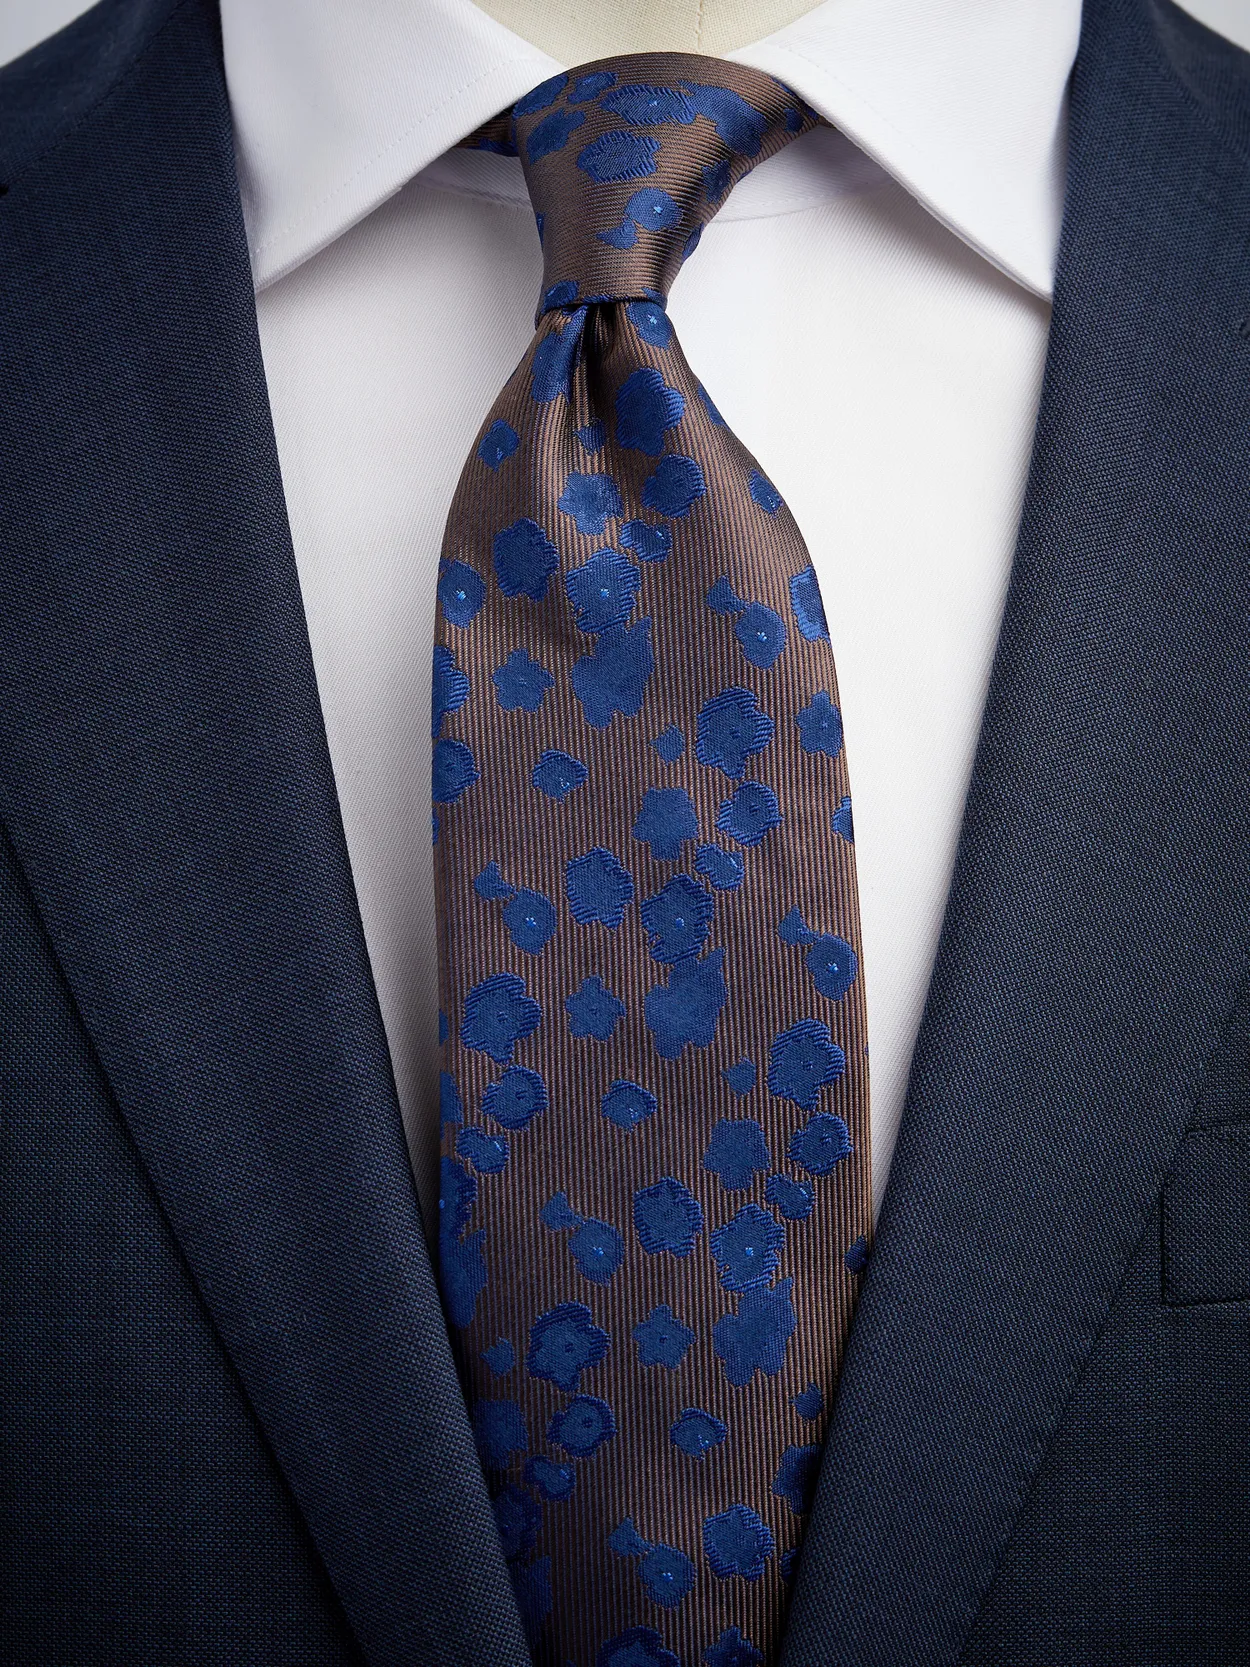 Brown & Blue Tie Floral